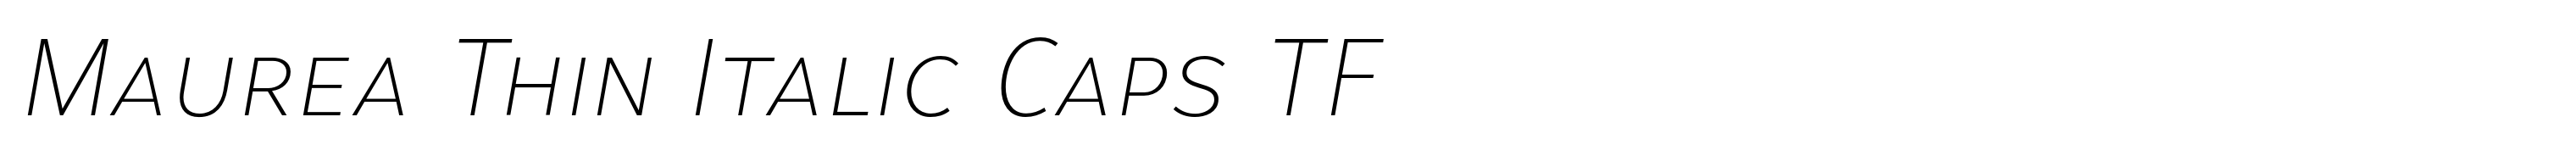 Maurea Thin Italic Caps TF